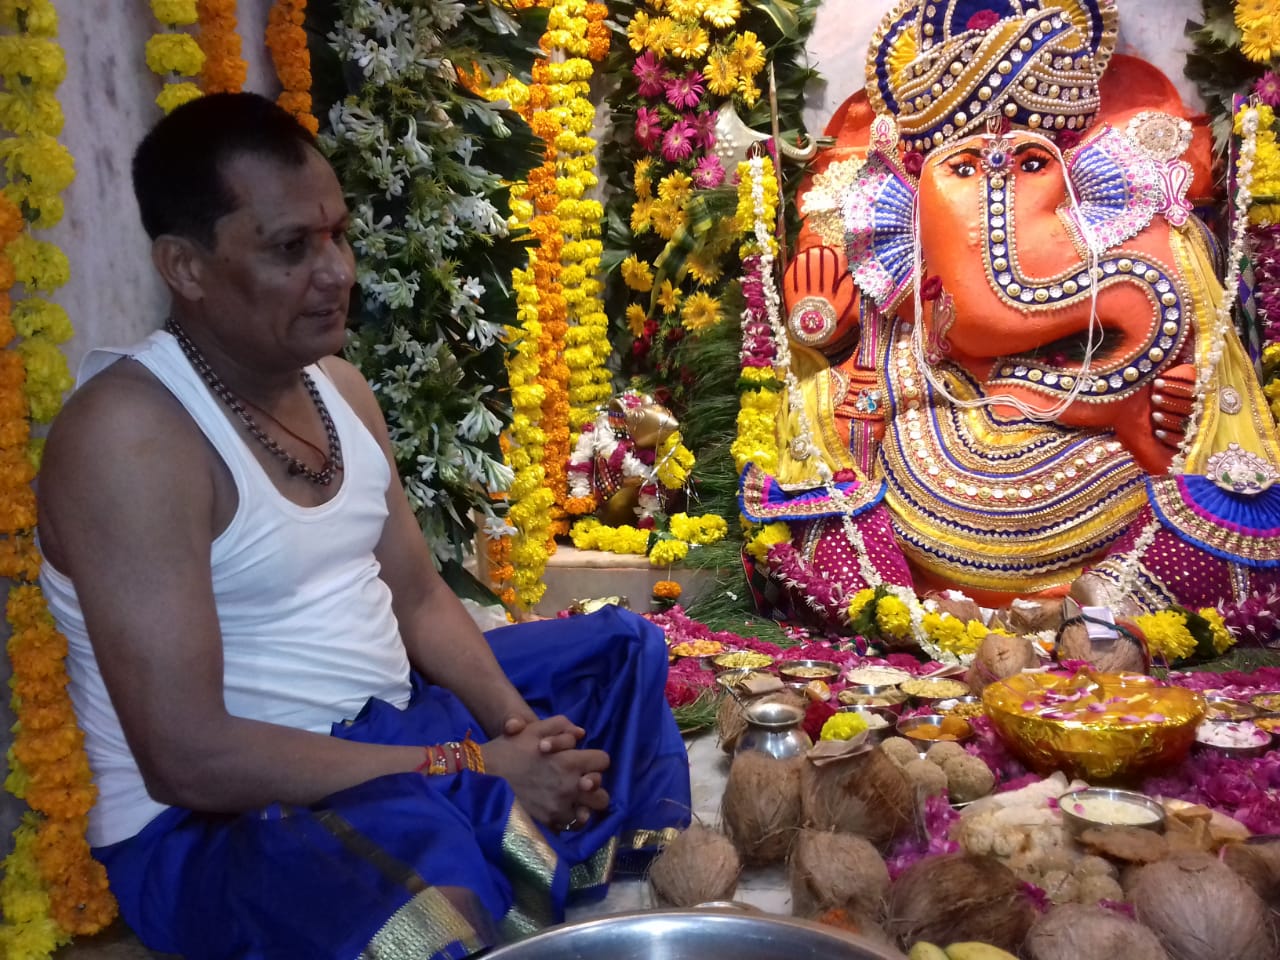 श्री श्री रणथंभौर गणेश मंदिर में 10 दिवसीय गणेशोत्सव का आयोजन | New India Times